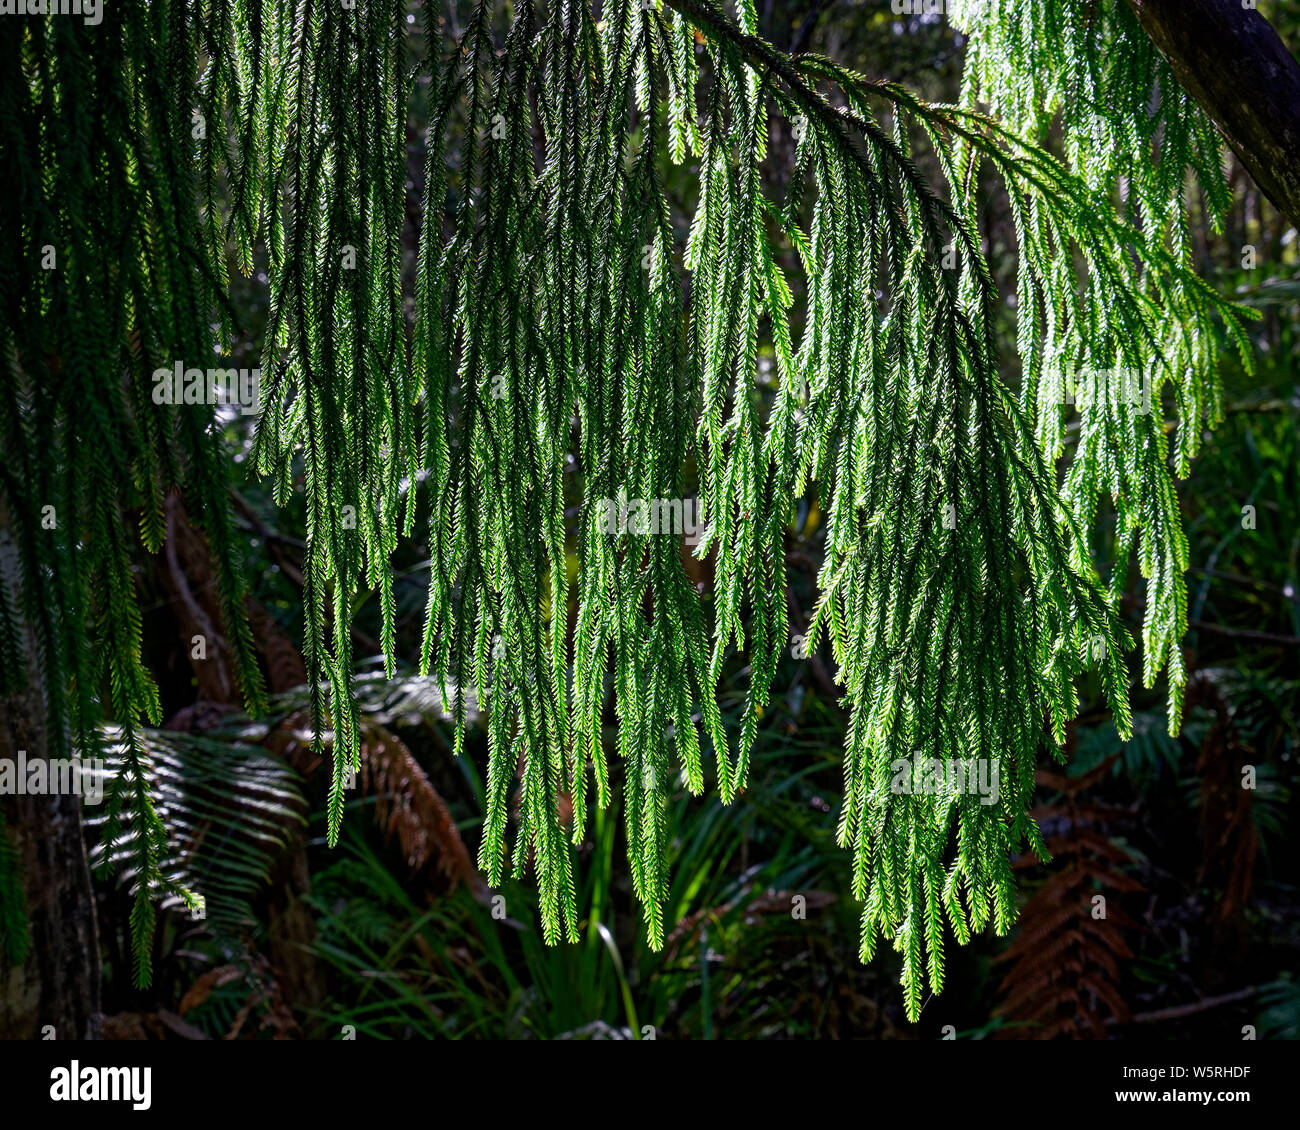 Native Rimu tree foliage, leaves or needles backlit by sunlight, Kahurangi National Park, west coast, New Zealand. Stock Photo